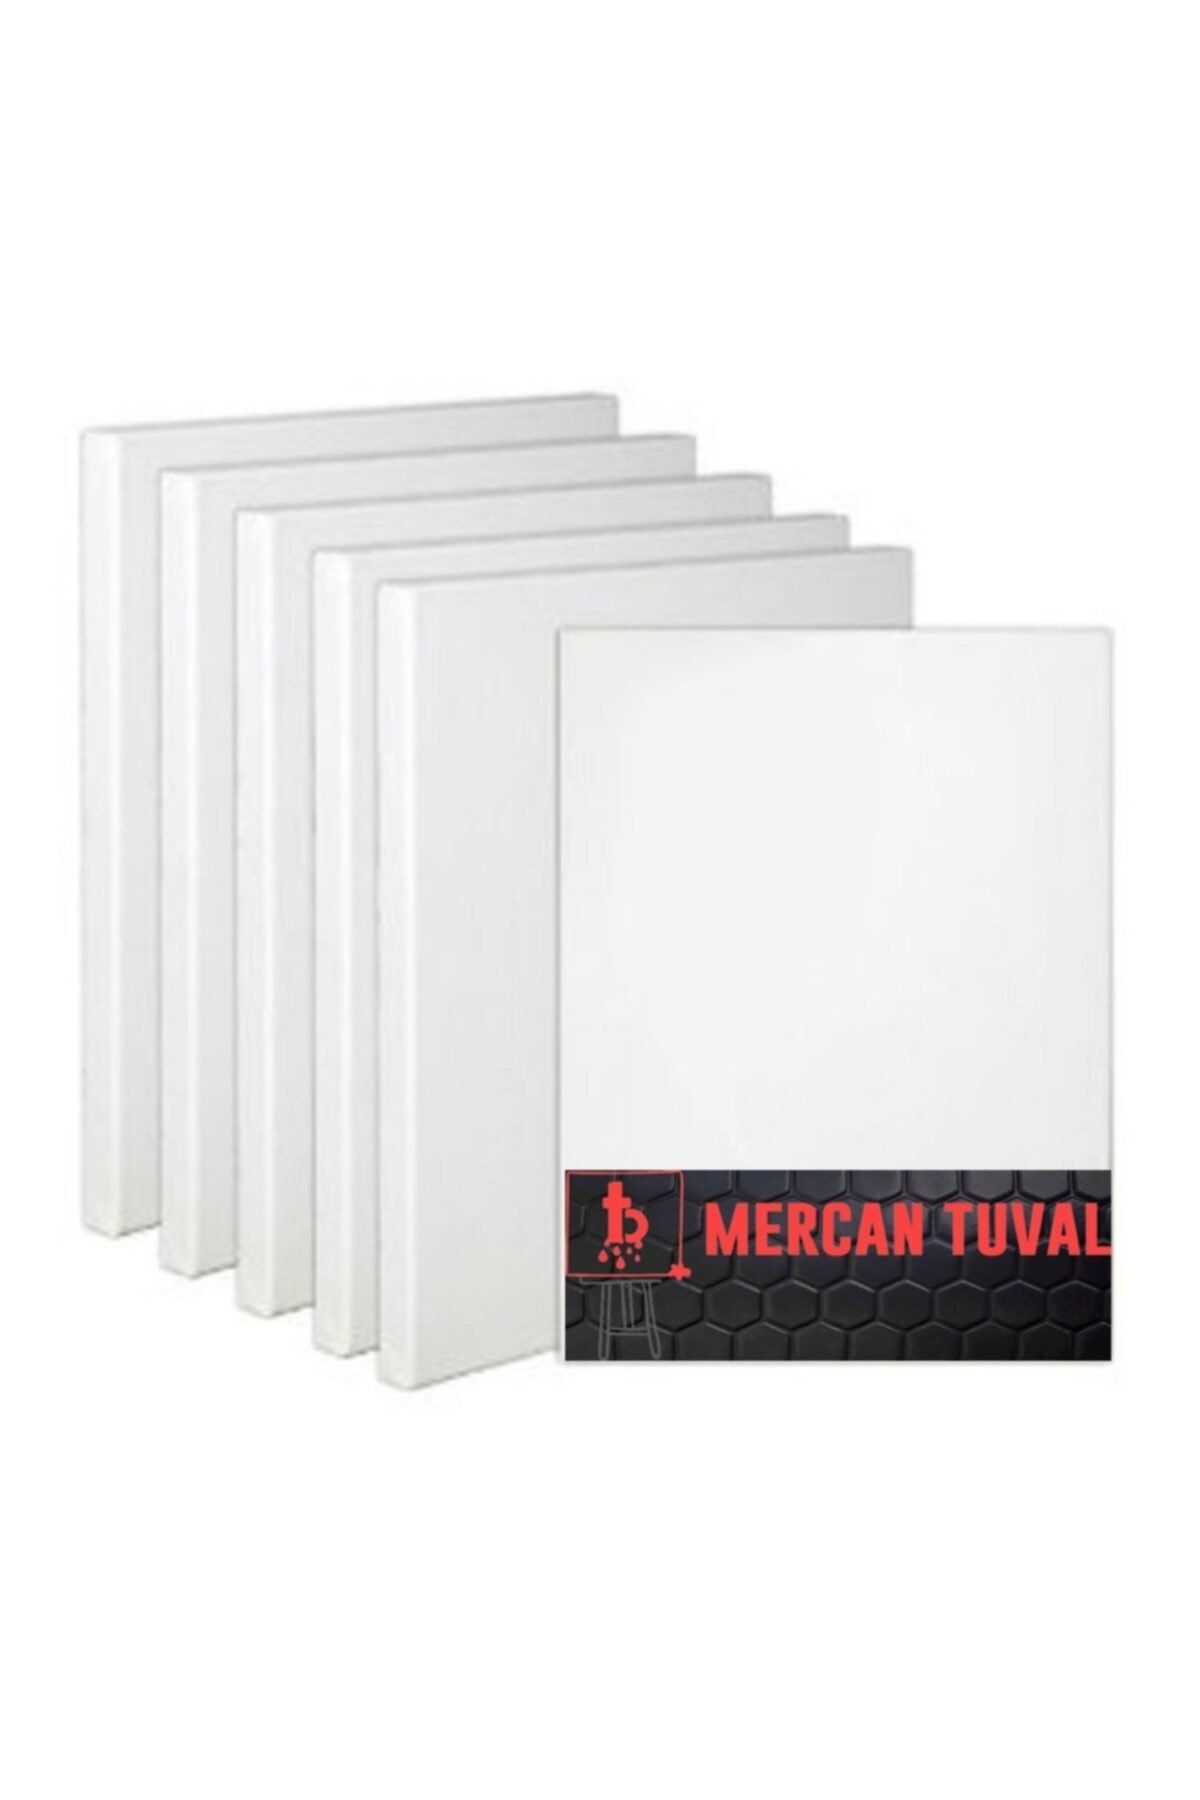 Mercan Tuval 35x50 Cm 5'li Paket 35505